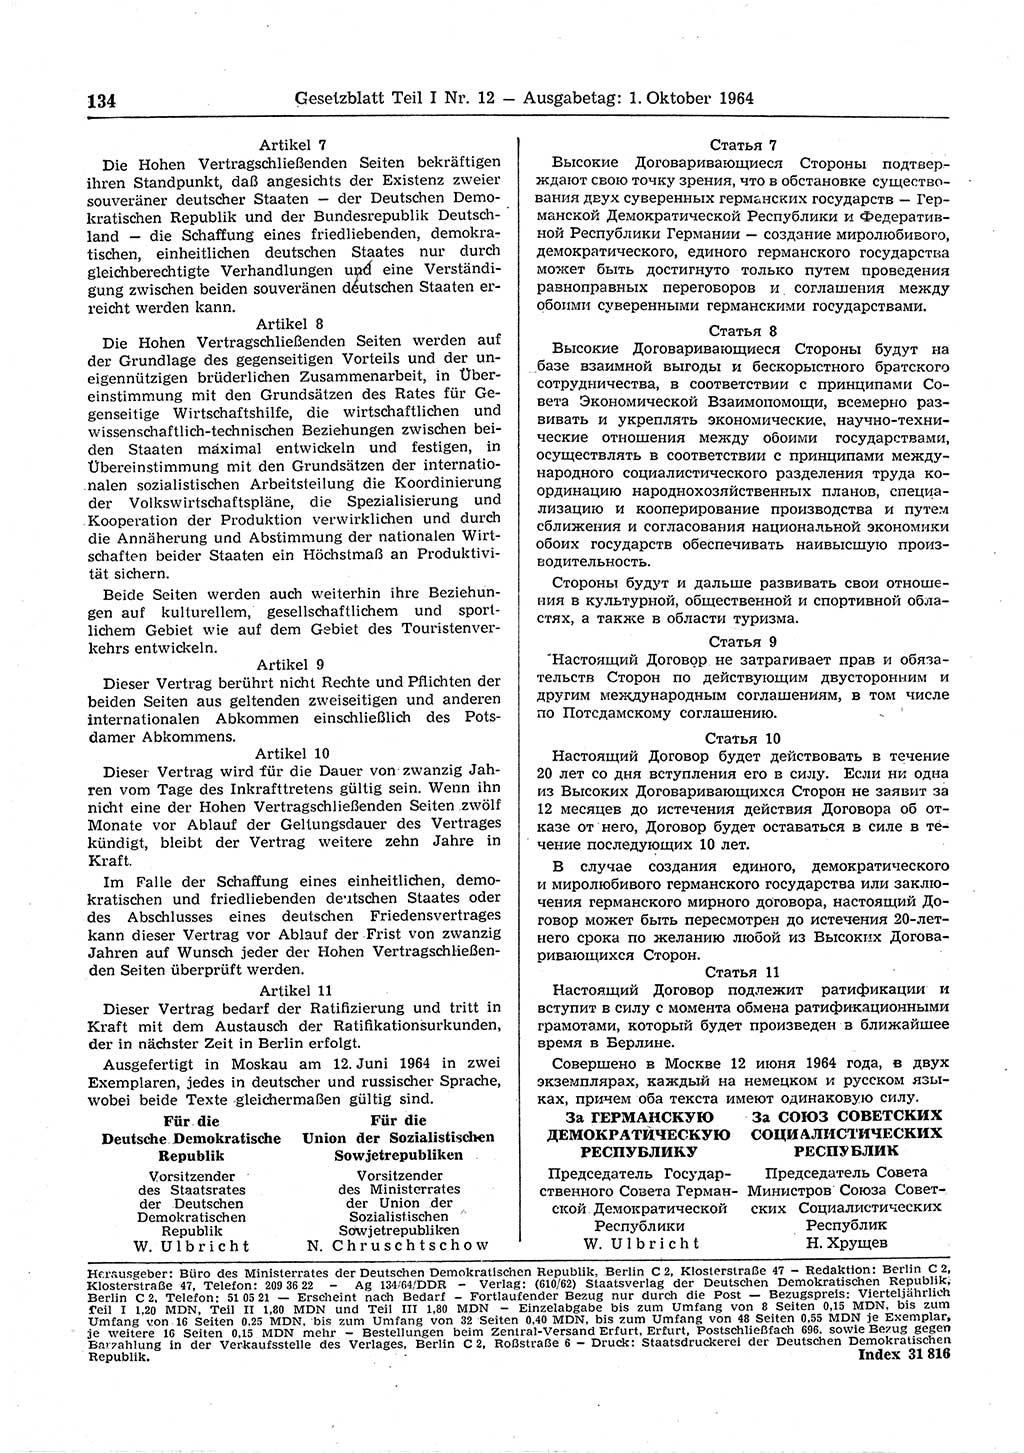 Gesetzblatt (GBl.) der Deutschen Demokratischen Republik (DDR) Teil Ⅰ 1964, Seite 134 (GBl. DDR Ⅰ 1964, S. 134)